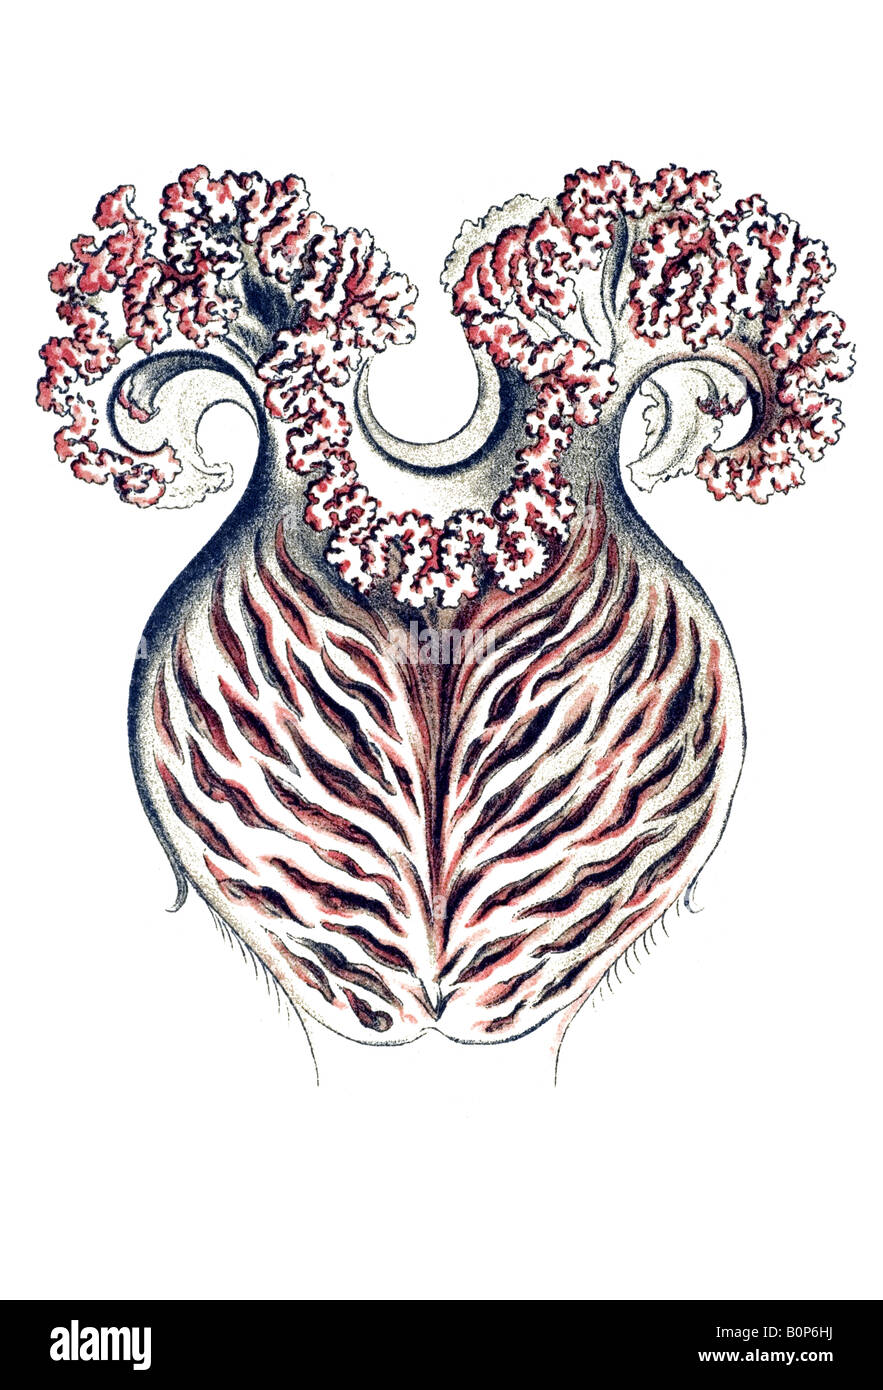 Nom Anthomedusae Tiara pileata, estomac, Haeckel, l'Europe du 20e siècle art nouveau Banque D'Images